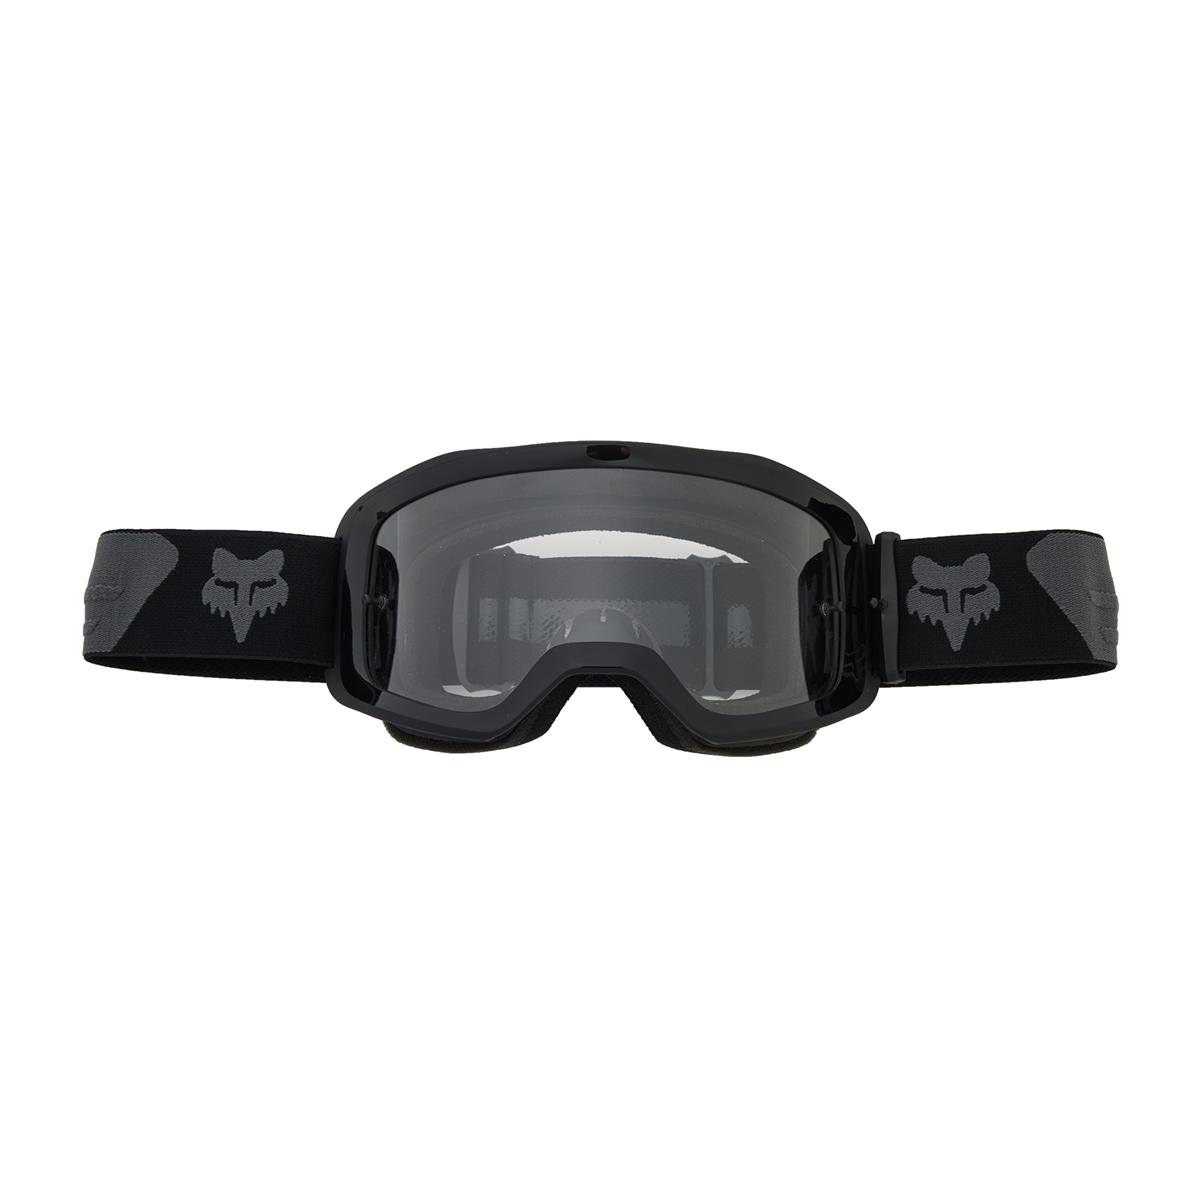 Fox Kids Goggle Main Core - Black/Gray, Non-Mirrored